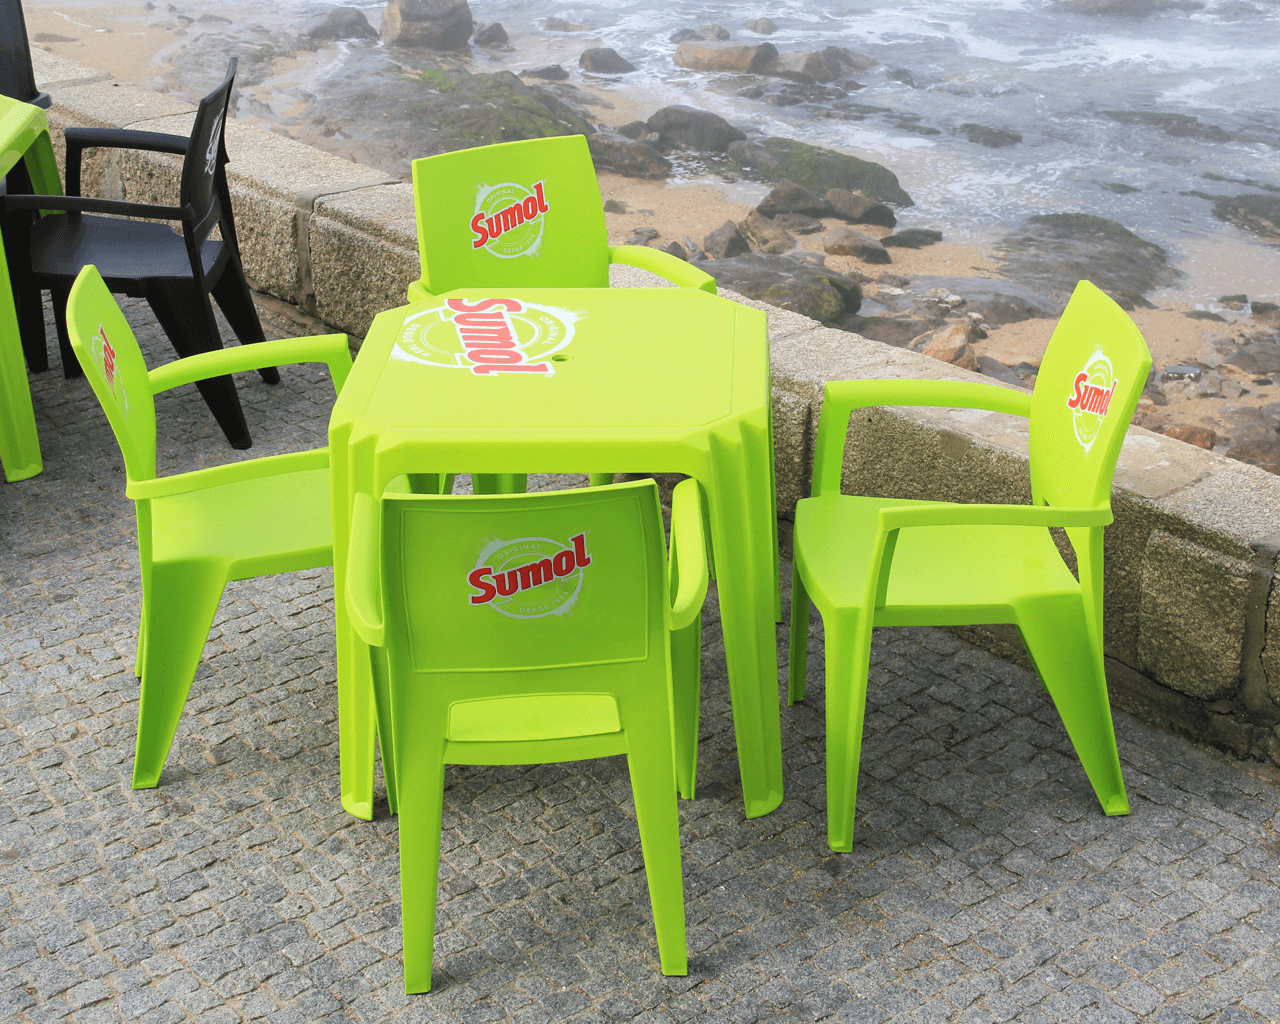 Mobiliário de praia e esplanada personalizada, tecnologia in-mould labelling, proteção contra raios UV, reciclável. Fabricado em Portugal, Plásticos Joluce.